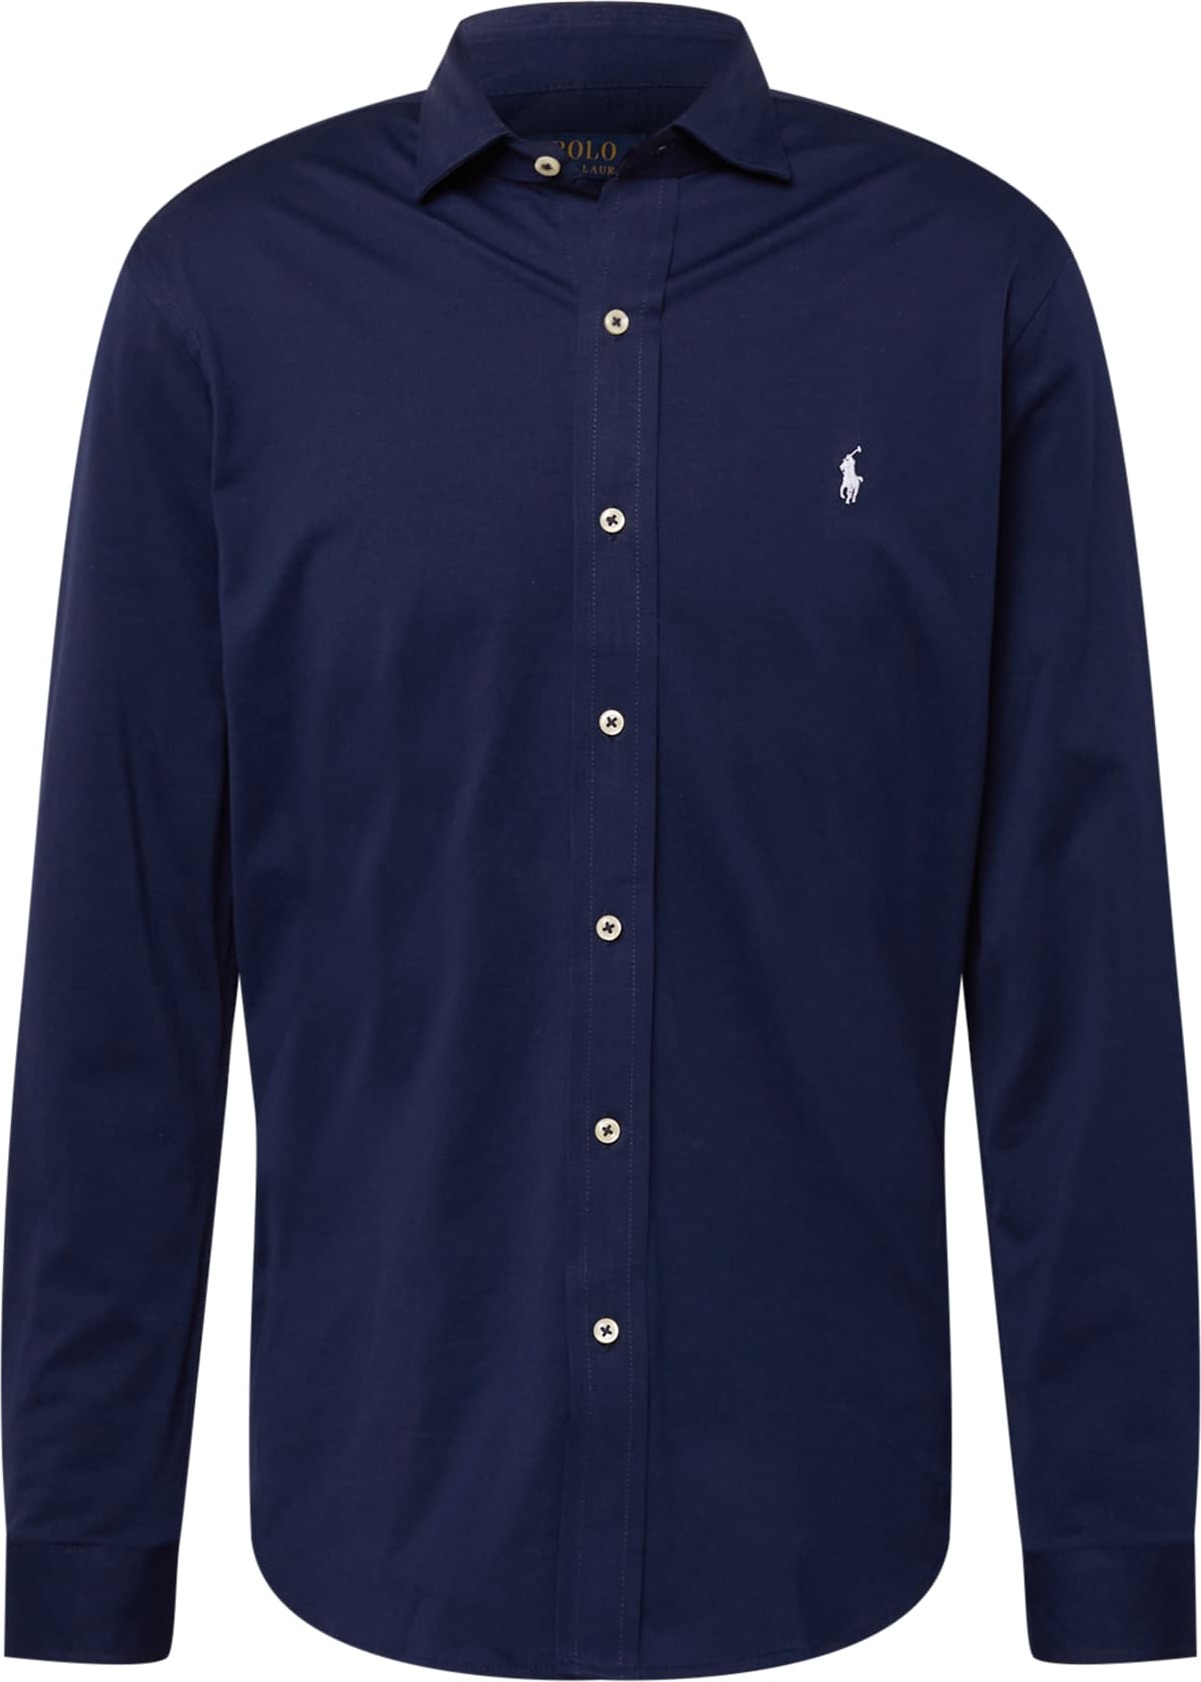 Společenská košile Polo Ralph Lauren námořnická modř / bílá